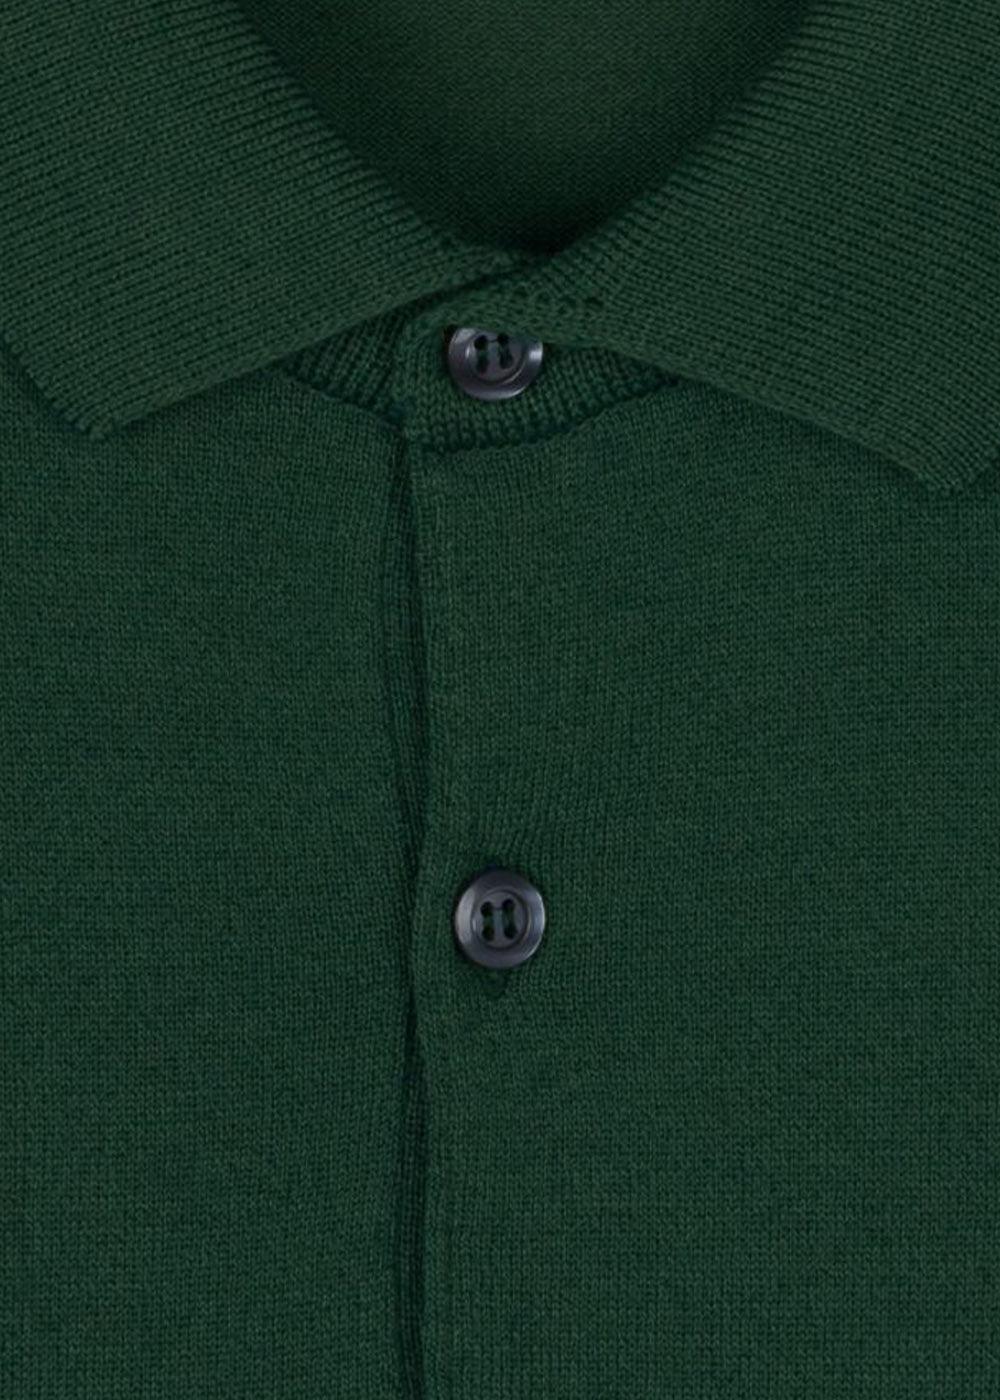 Cpayton SS Polo Shirt - Bottle Green